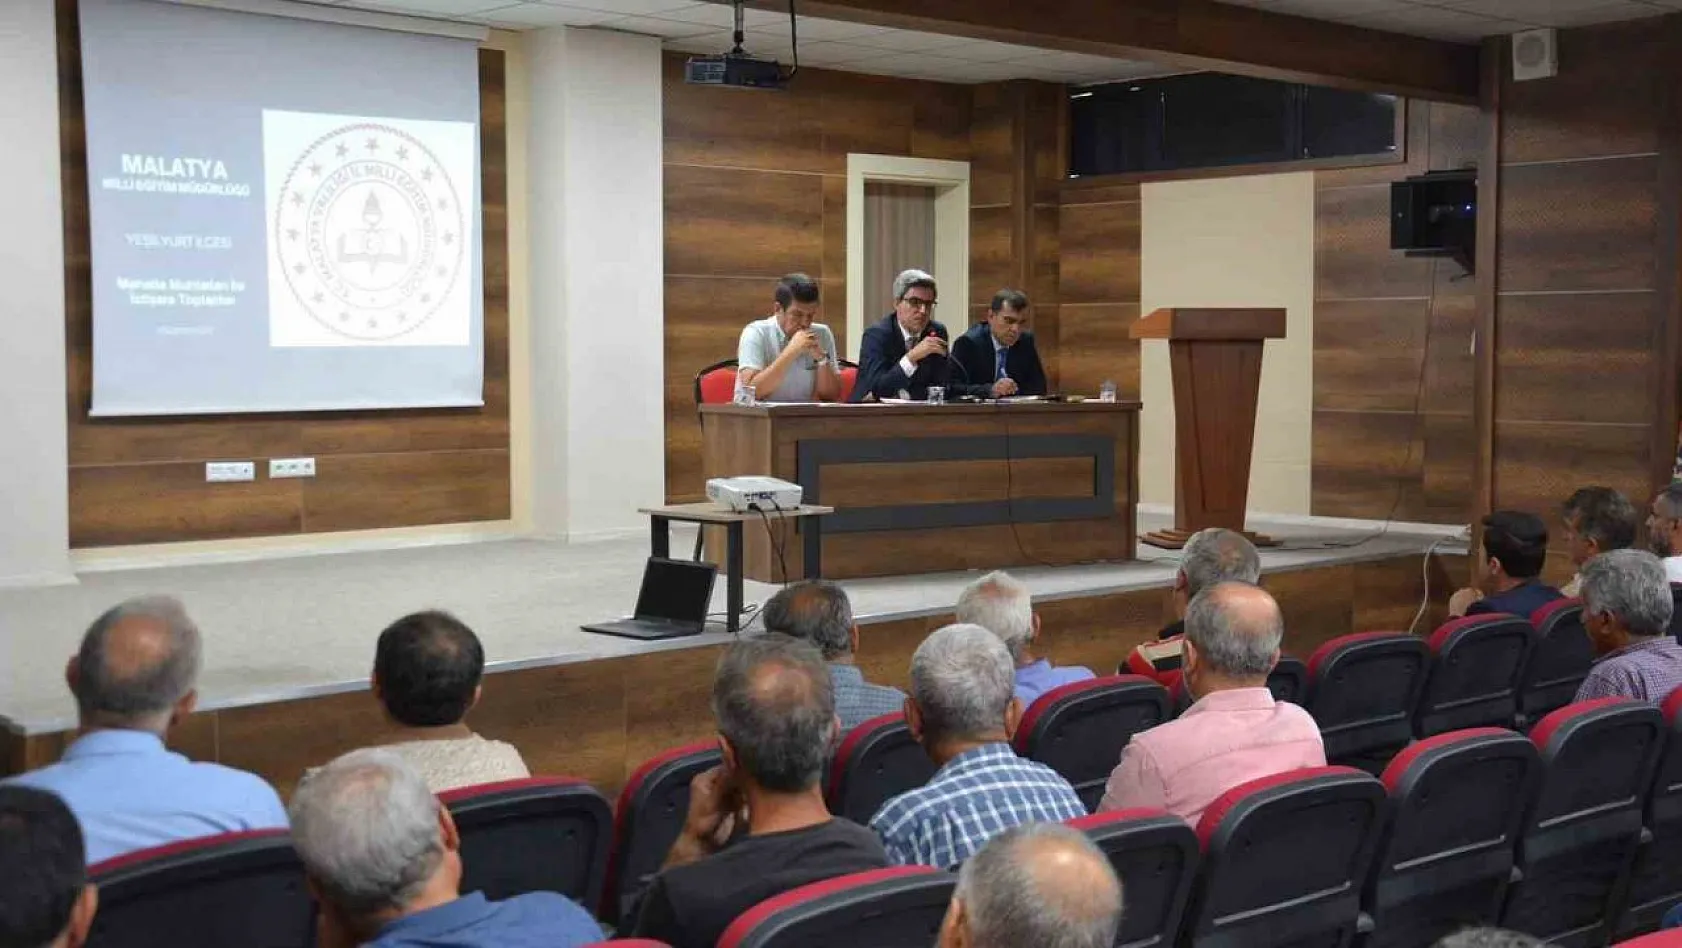 Malatya'da Muhtarlarla eğitim toplantısı